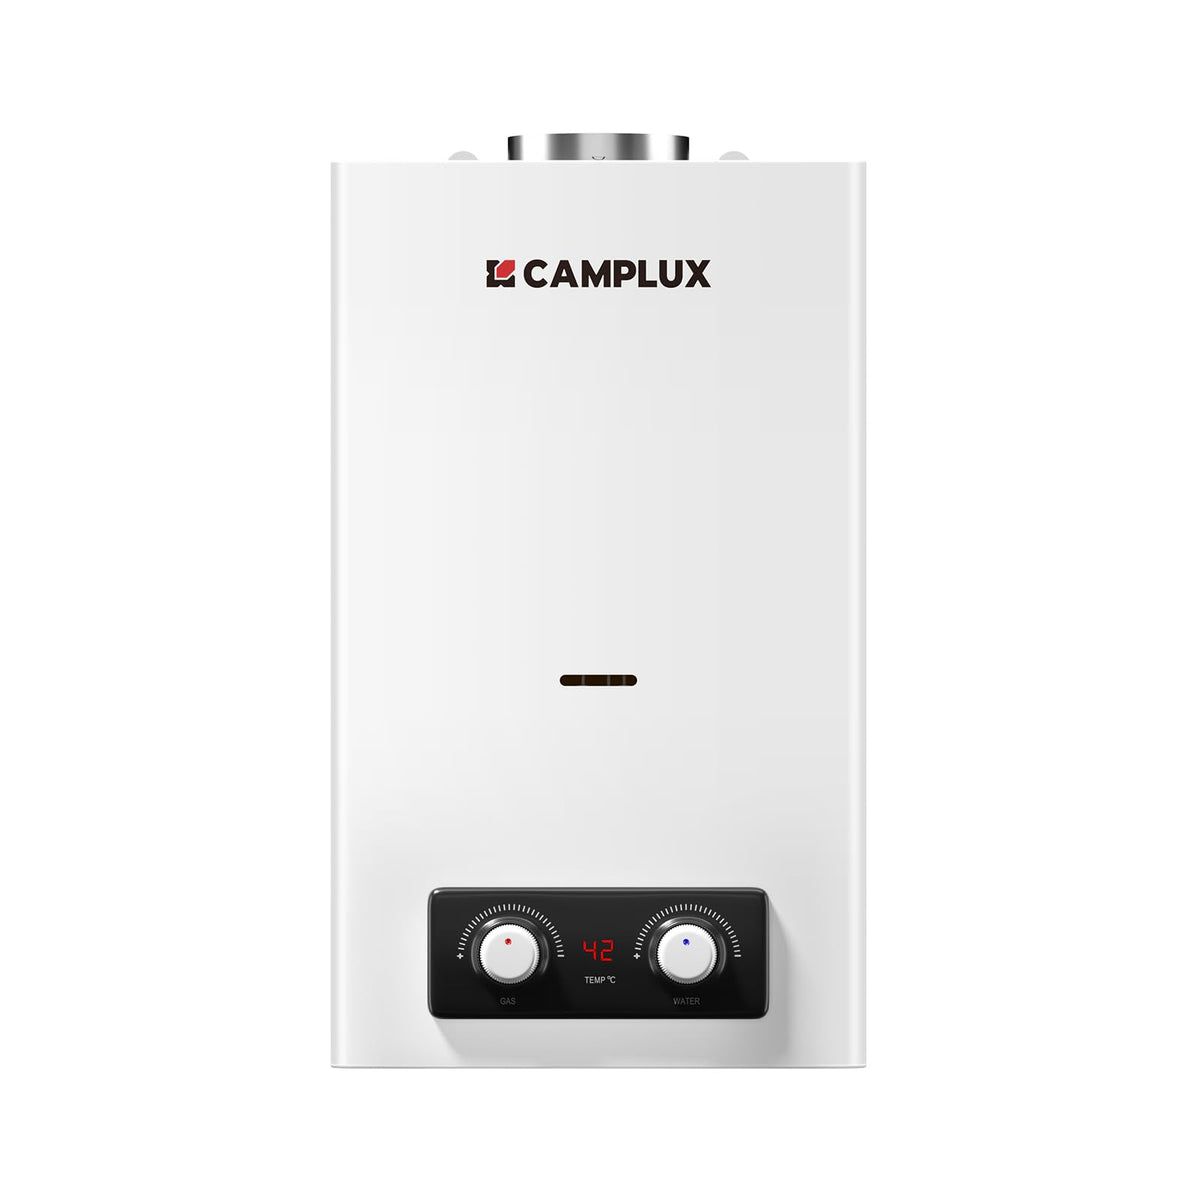 CAMPLUX 10 Liter Gasdurchlauferhitzer Indoor, BY264-DE Gastherme für Küchen-/Balkoninstallation, 50mbar, LPG, 3V, 20kW [Energieklasse A]